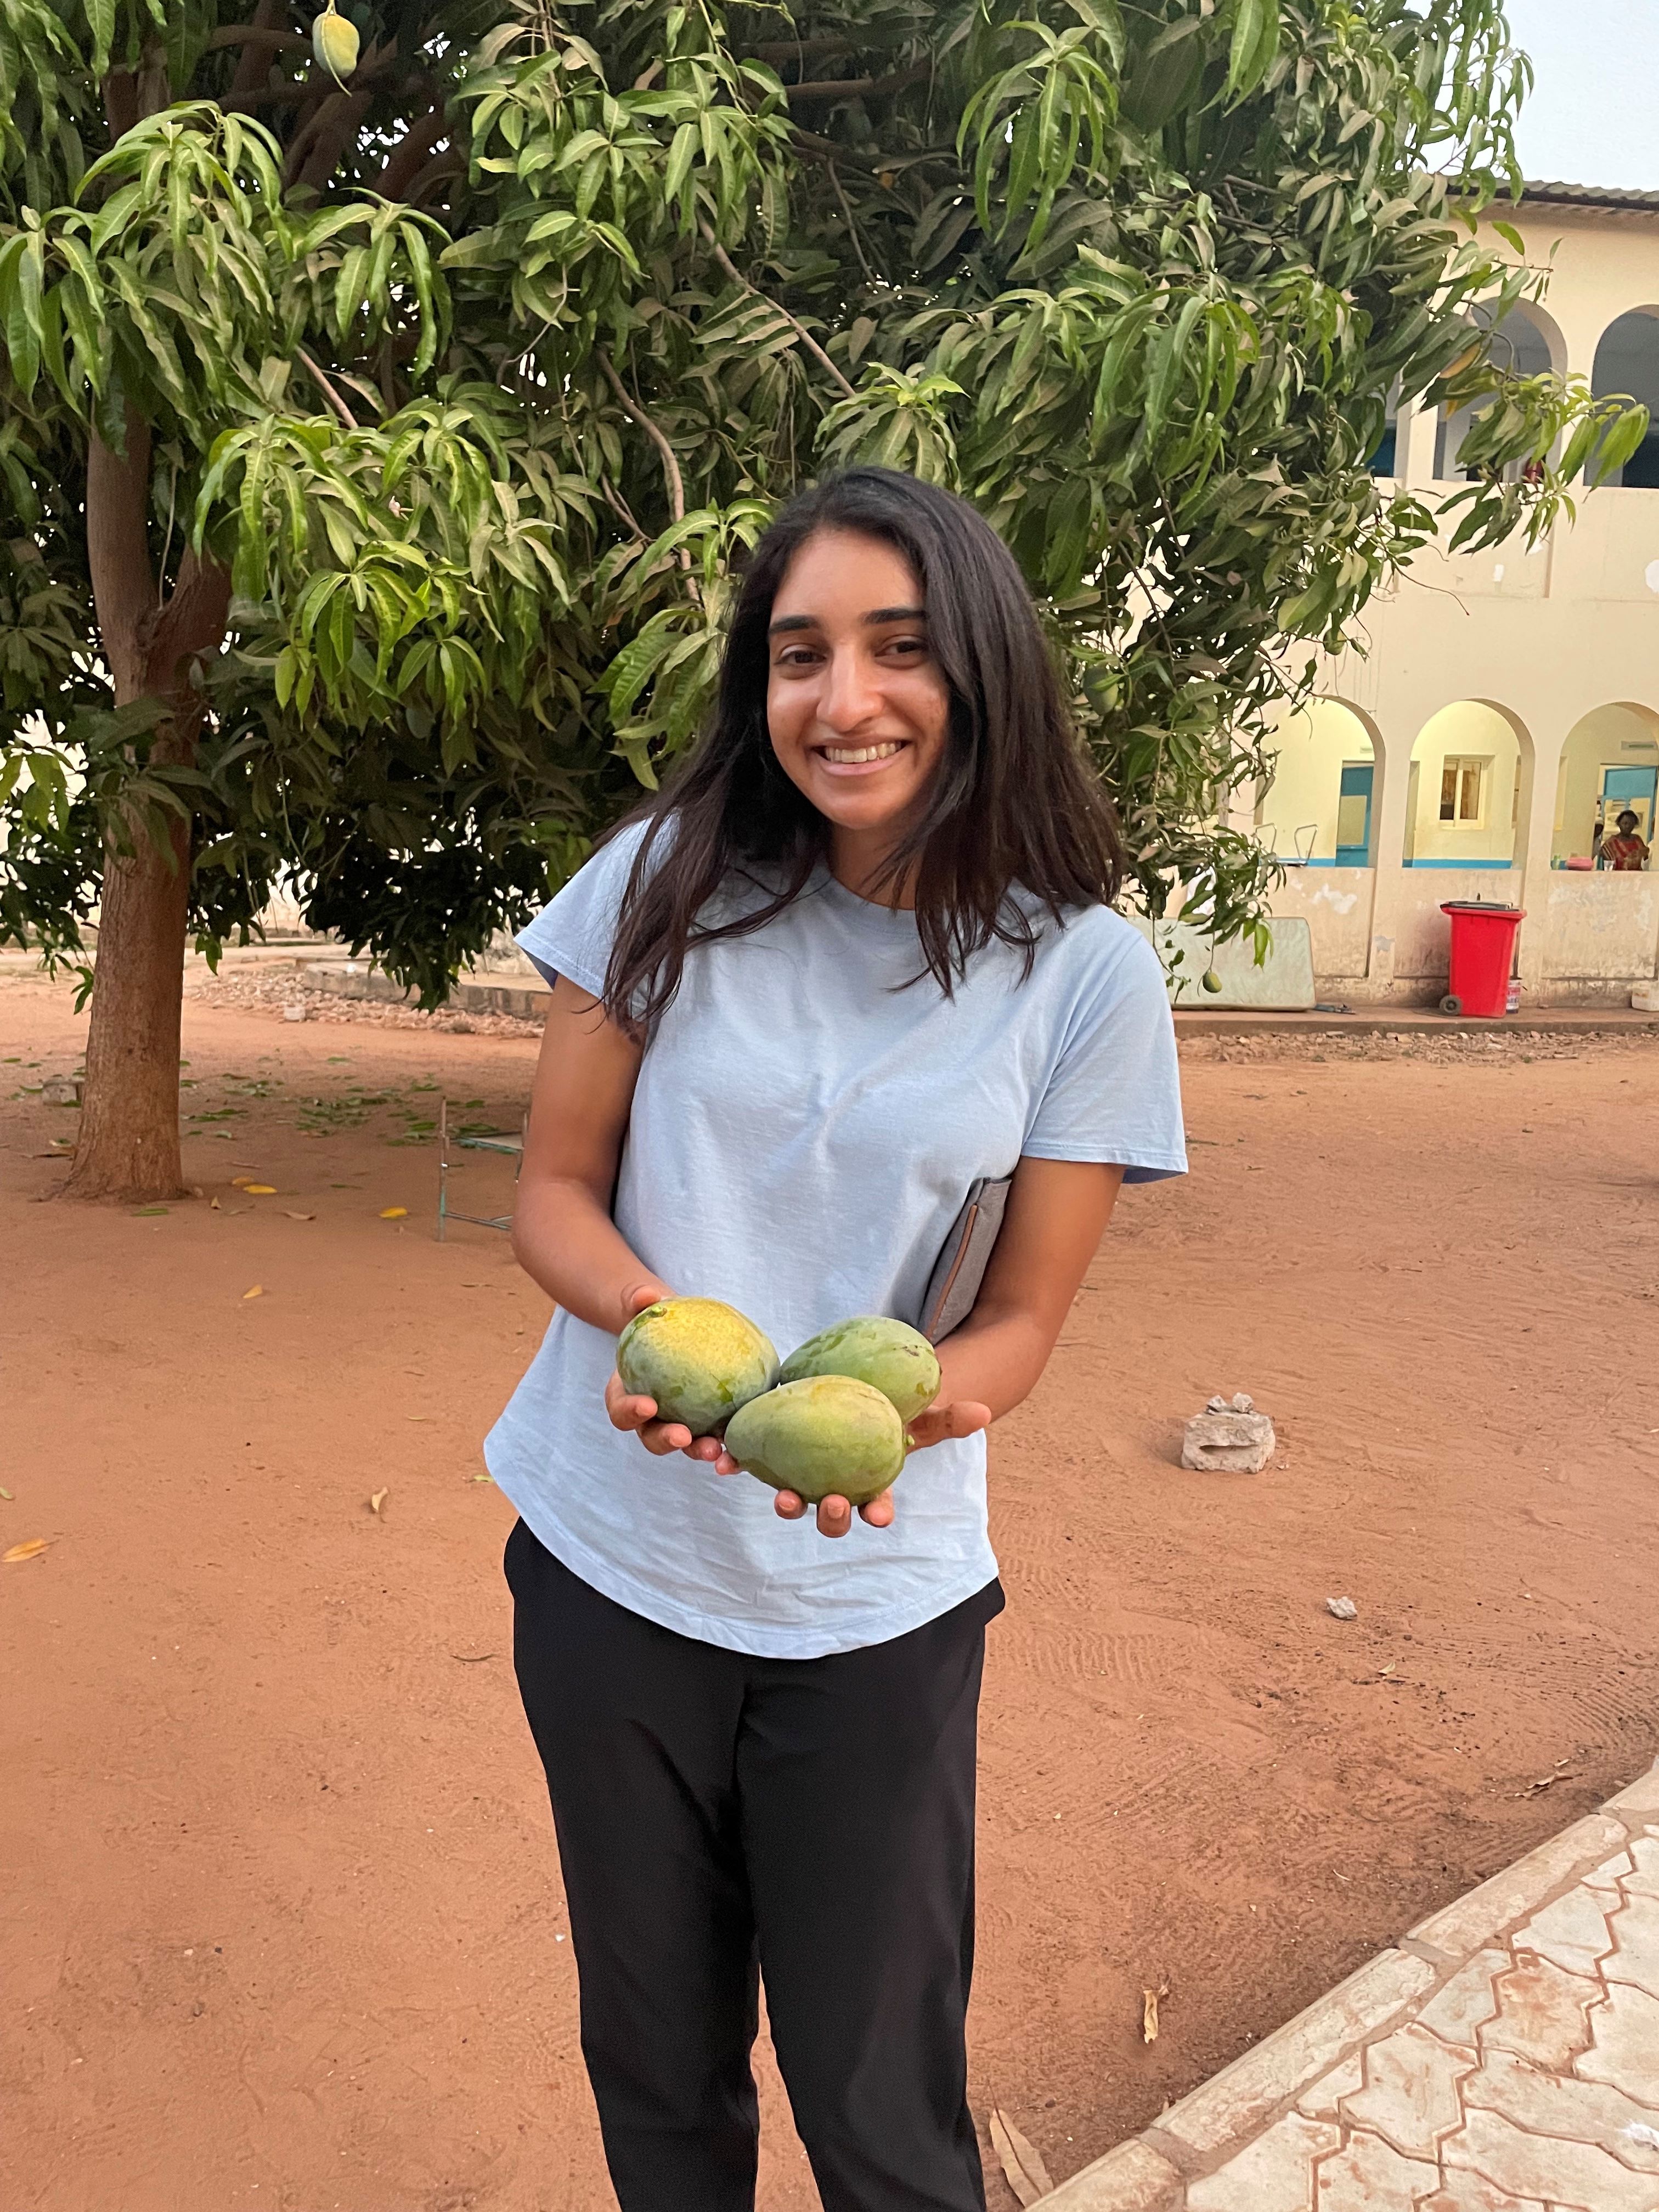 A few mangoes I picked!